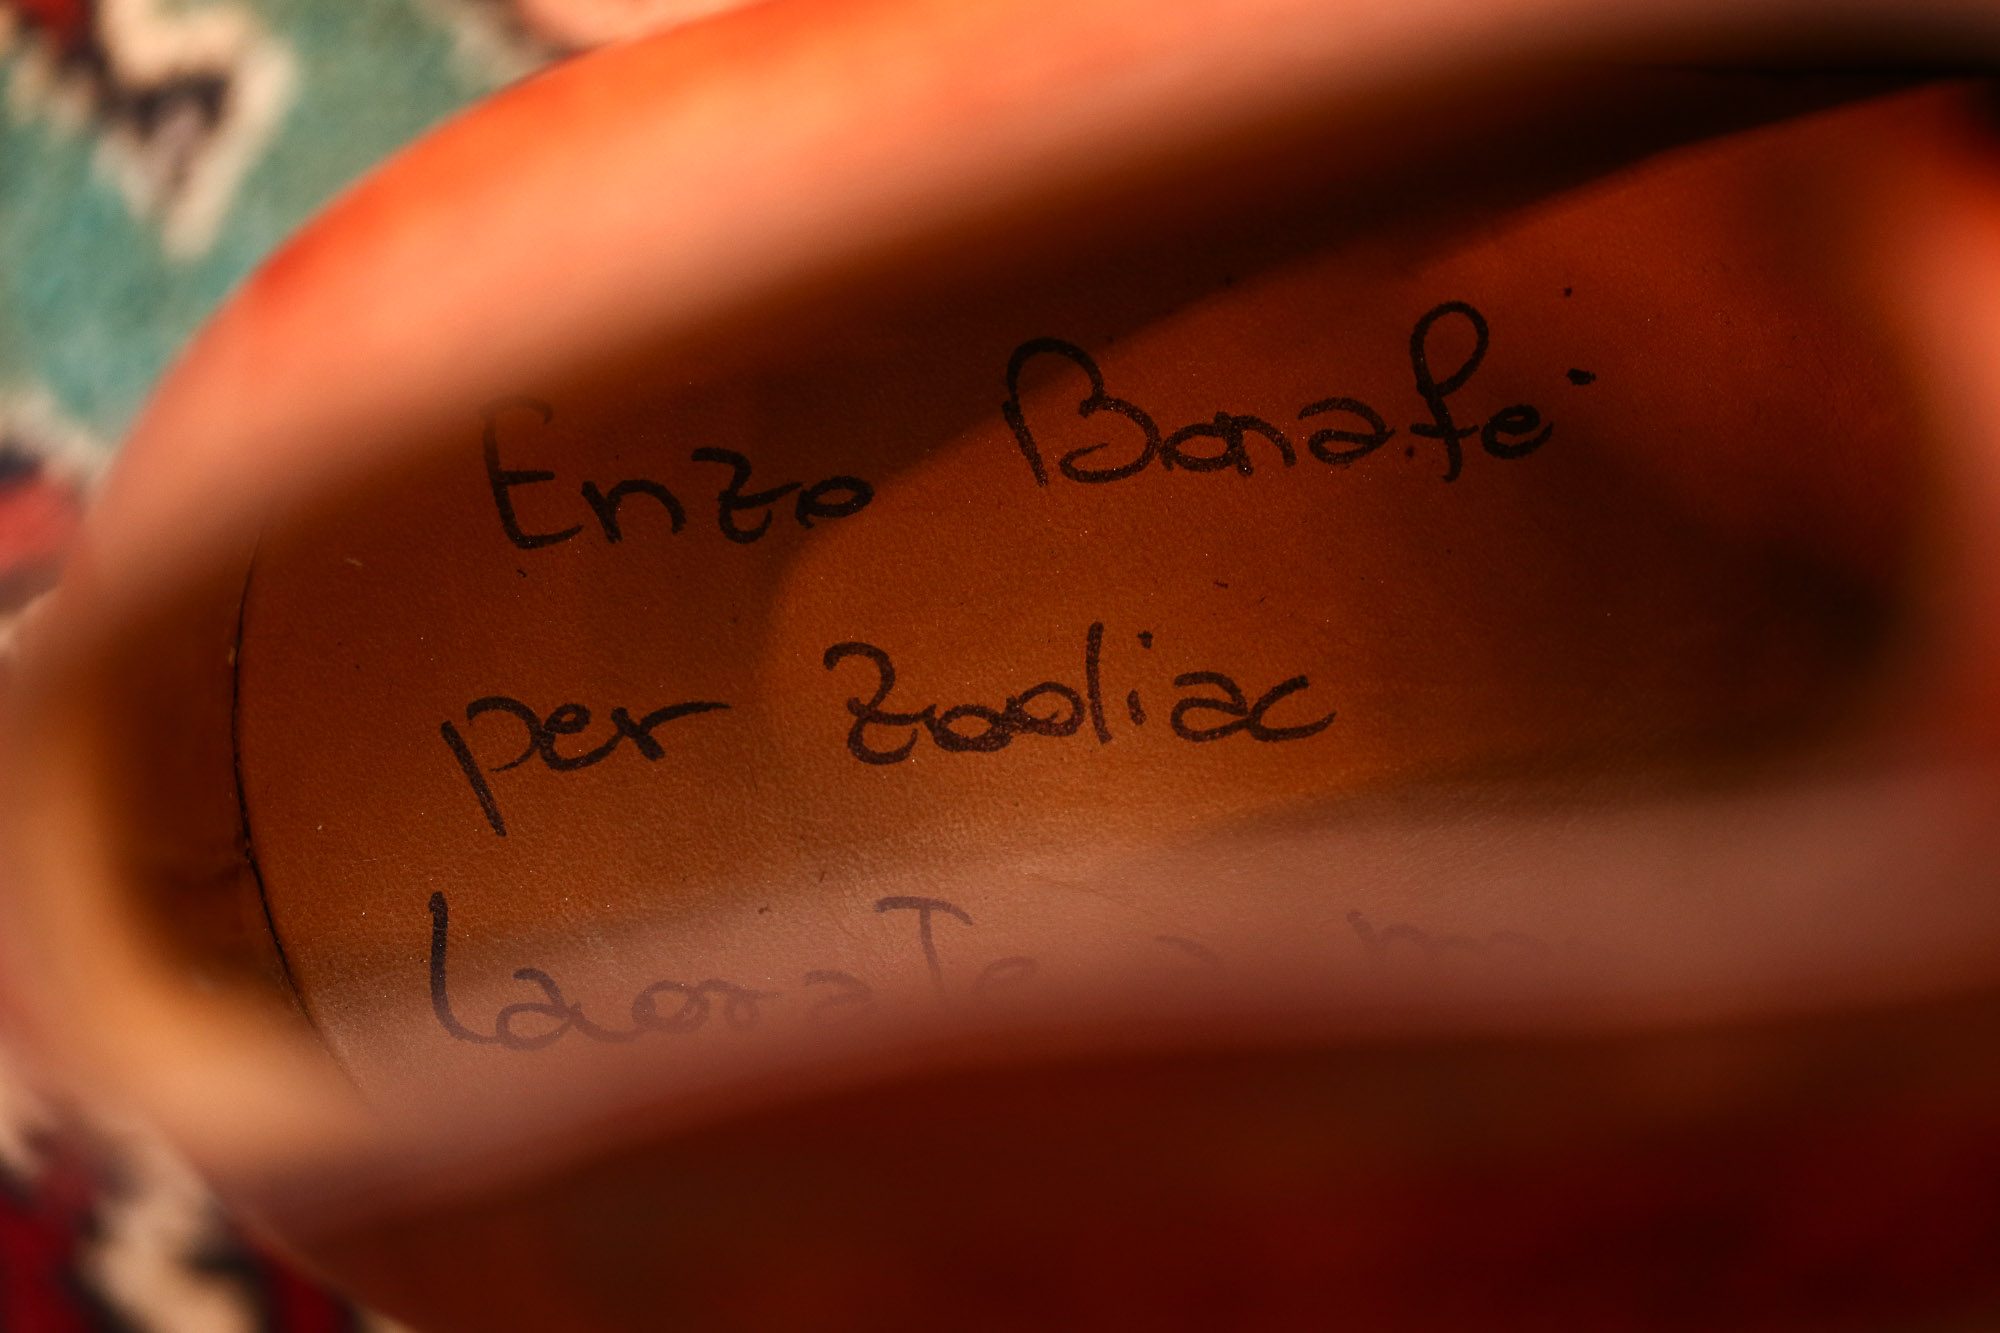 ENZO BONAFE (エンツォボナフェ) ART.3722 Chukka boots Bonaudo Museum Calf Leather ボナウド社 ミュージアムカーフノルベジェーゼ製法 チャッカブーツ NEW GOLD (ニューゴールド) made in Italy(イタリア製) 2017 春夏新作 愛知 名古屋 Alto e Diritto アルト エ デリット エンツォボナフェ ボナフェ ベネチアンクリーム JOHN LOBB ジョンロブ CHURCH’S チャーチ JOSEPH CHEANEY ジョセフチーニー CORTHAY コルテ ALFRED SARGENT アルフレッドサージェント CROCKETT&JONES クロケットジョーンズ F.LLI GIACOMETTI フラテッリジャコメッティ ENZO BONAFE エンツォボナフェ BETTANIN&VENTURI ベッタニンヴェントゥーリ JALAN SRIWIJAYA ジャランスリウァヤ J.W.WESTON ジェイエムウエストン SANTONI サントーニ SERGIO ROSSI セルジオロッシ CARMINA カルミナ